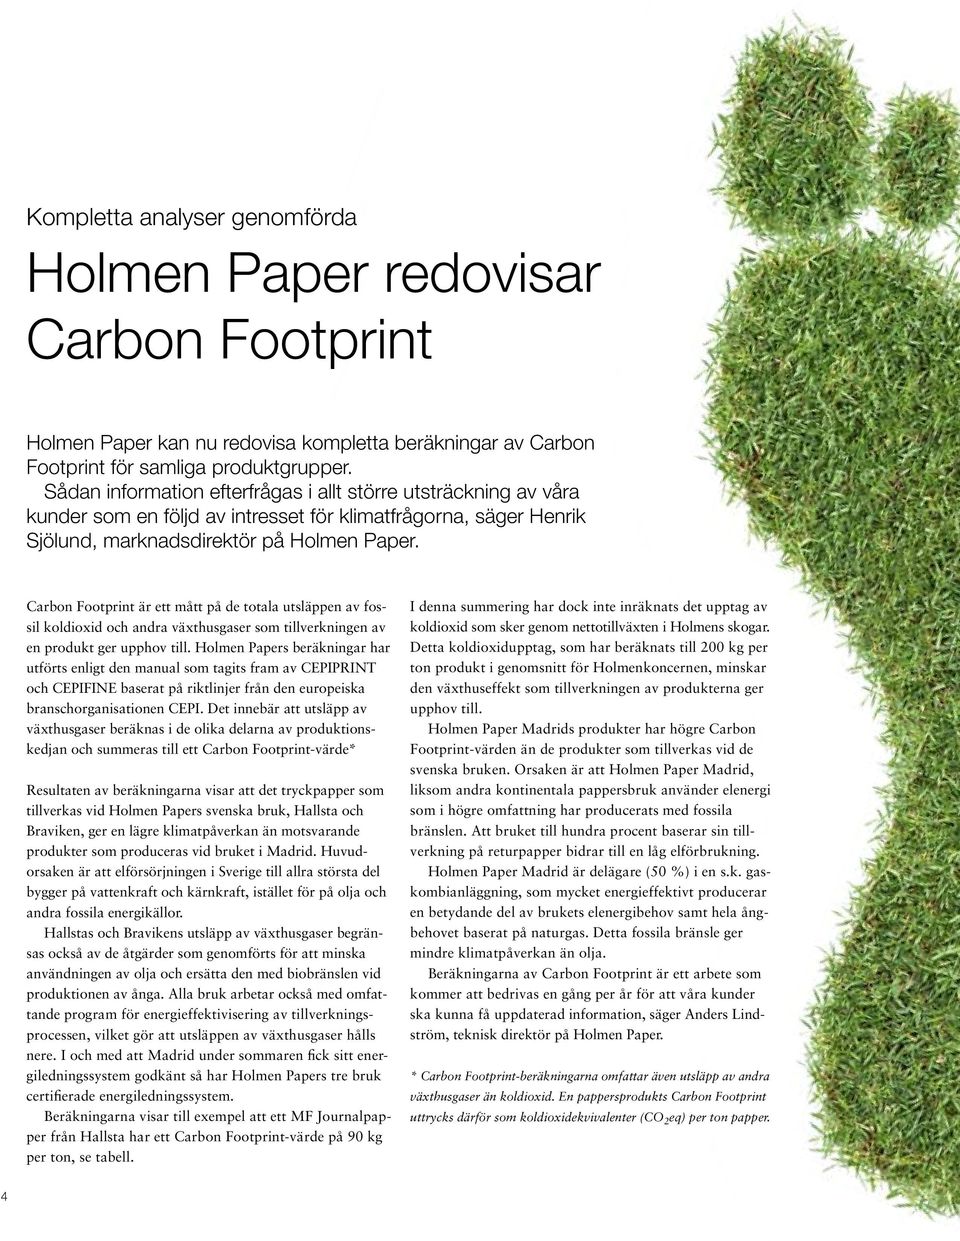 Carbon Footprint är ett mått på de totala utsläppen av fossil koldioxid och andra växthusgaser som tillverkningen av en produkt ger upphov till.